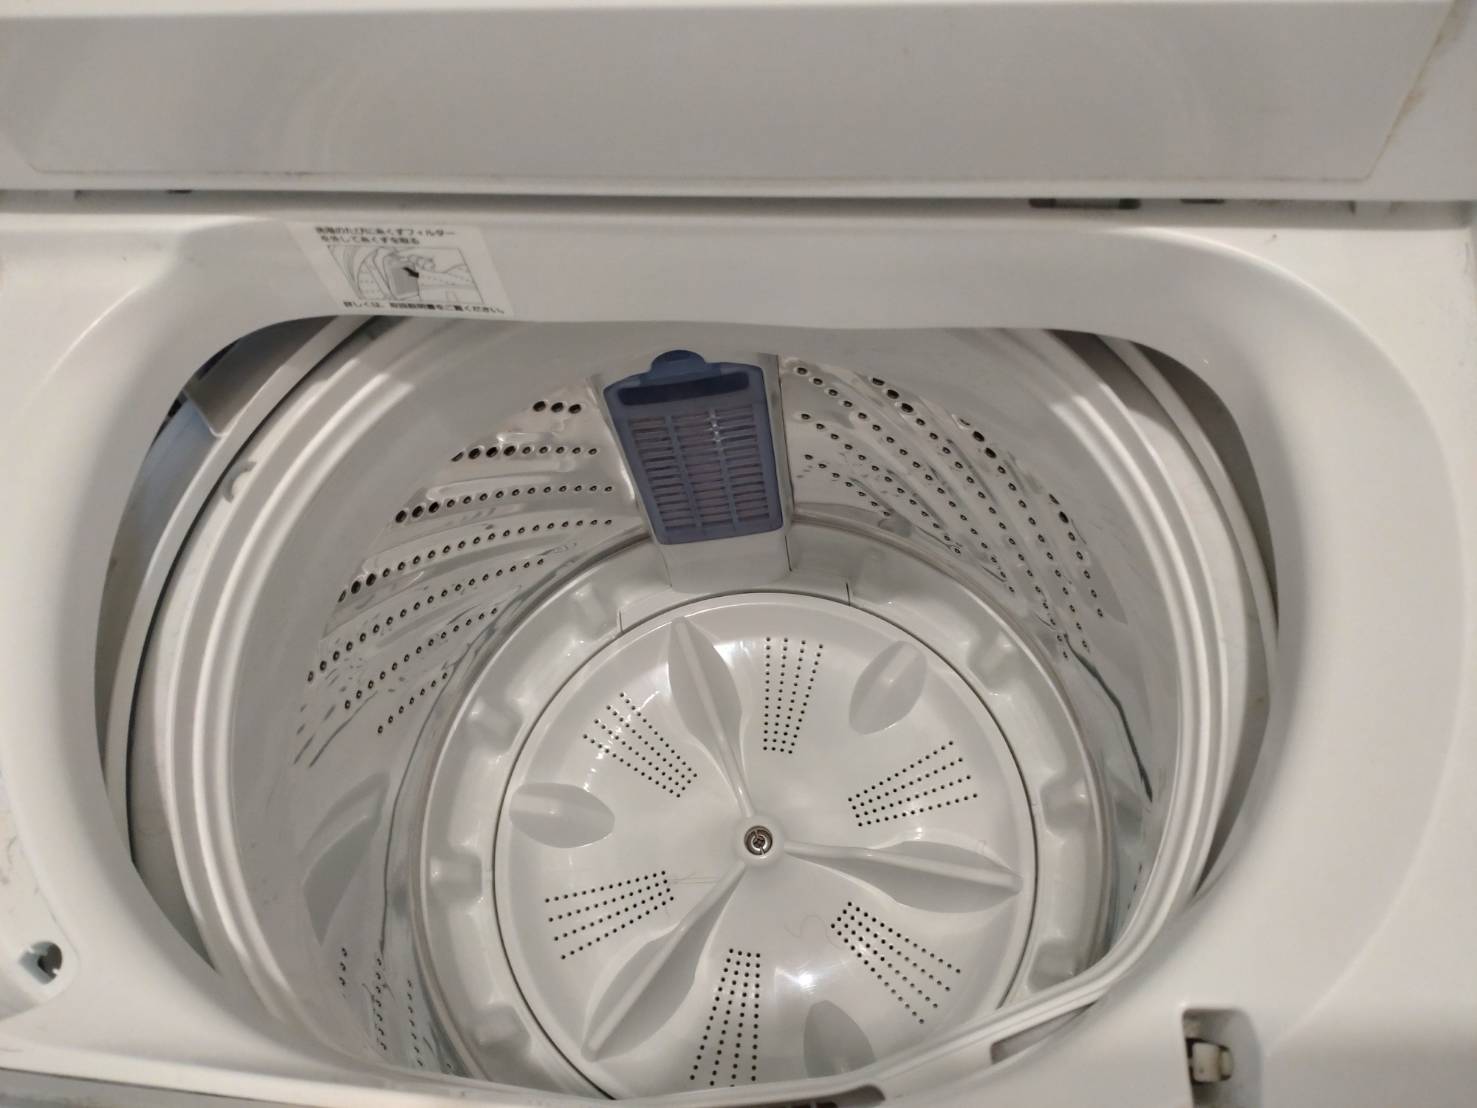 縦型洗濯機のパルセーター表側の画像